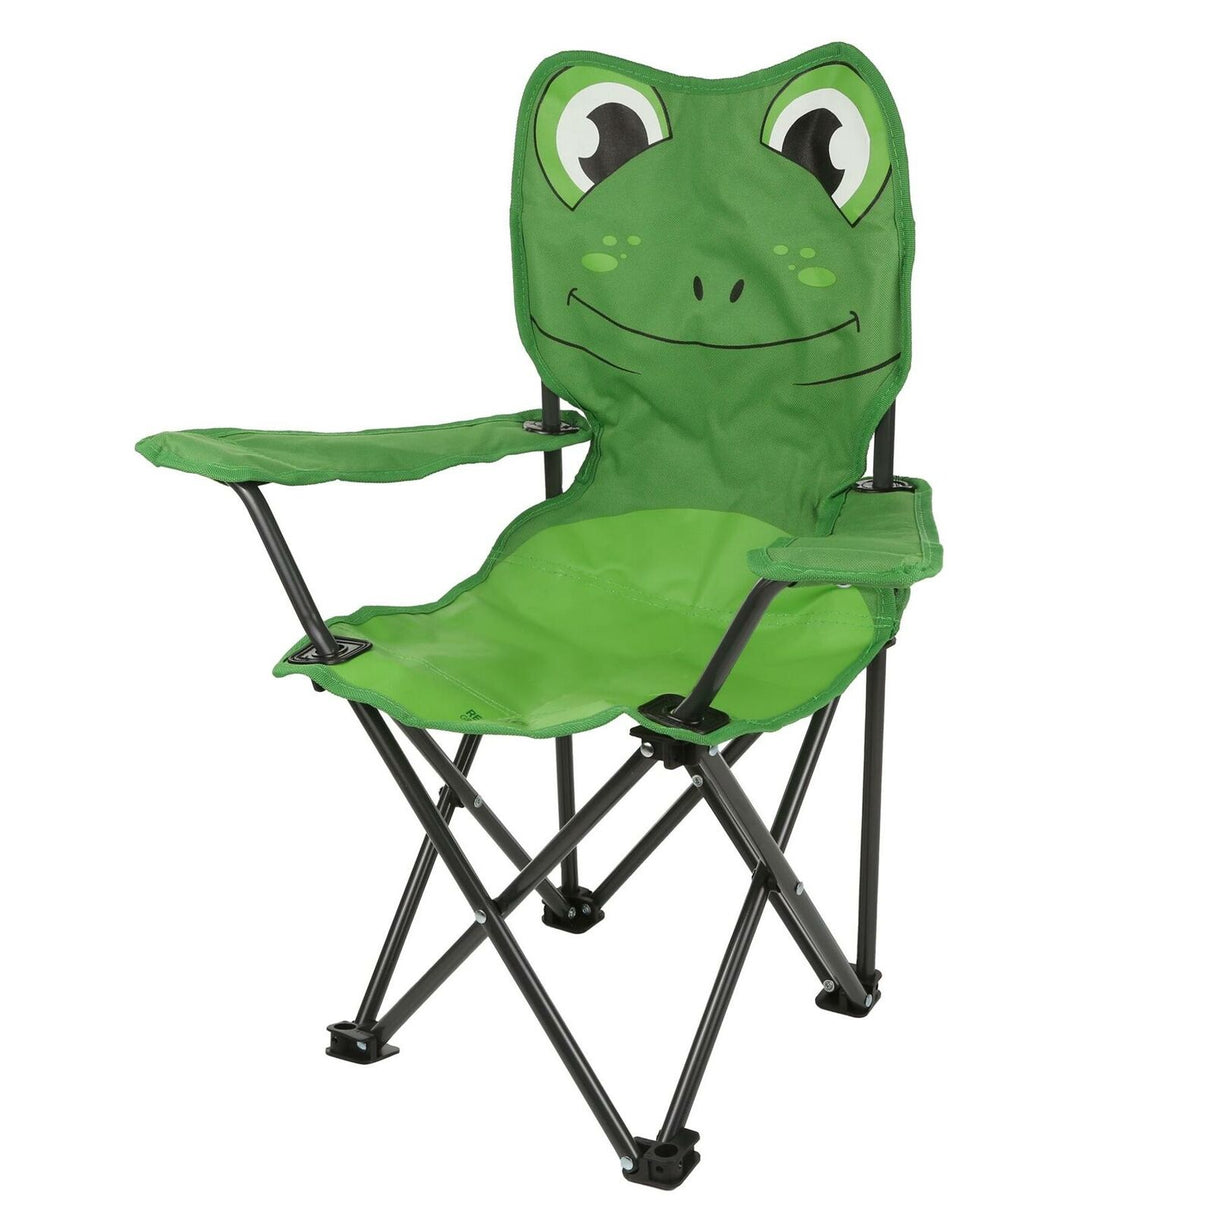 Regatta Kids Camping Lightweight Folding Chair - Ideal for Boys and Girls